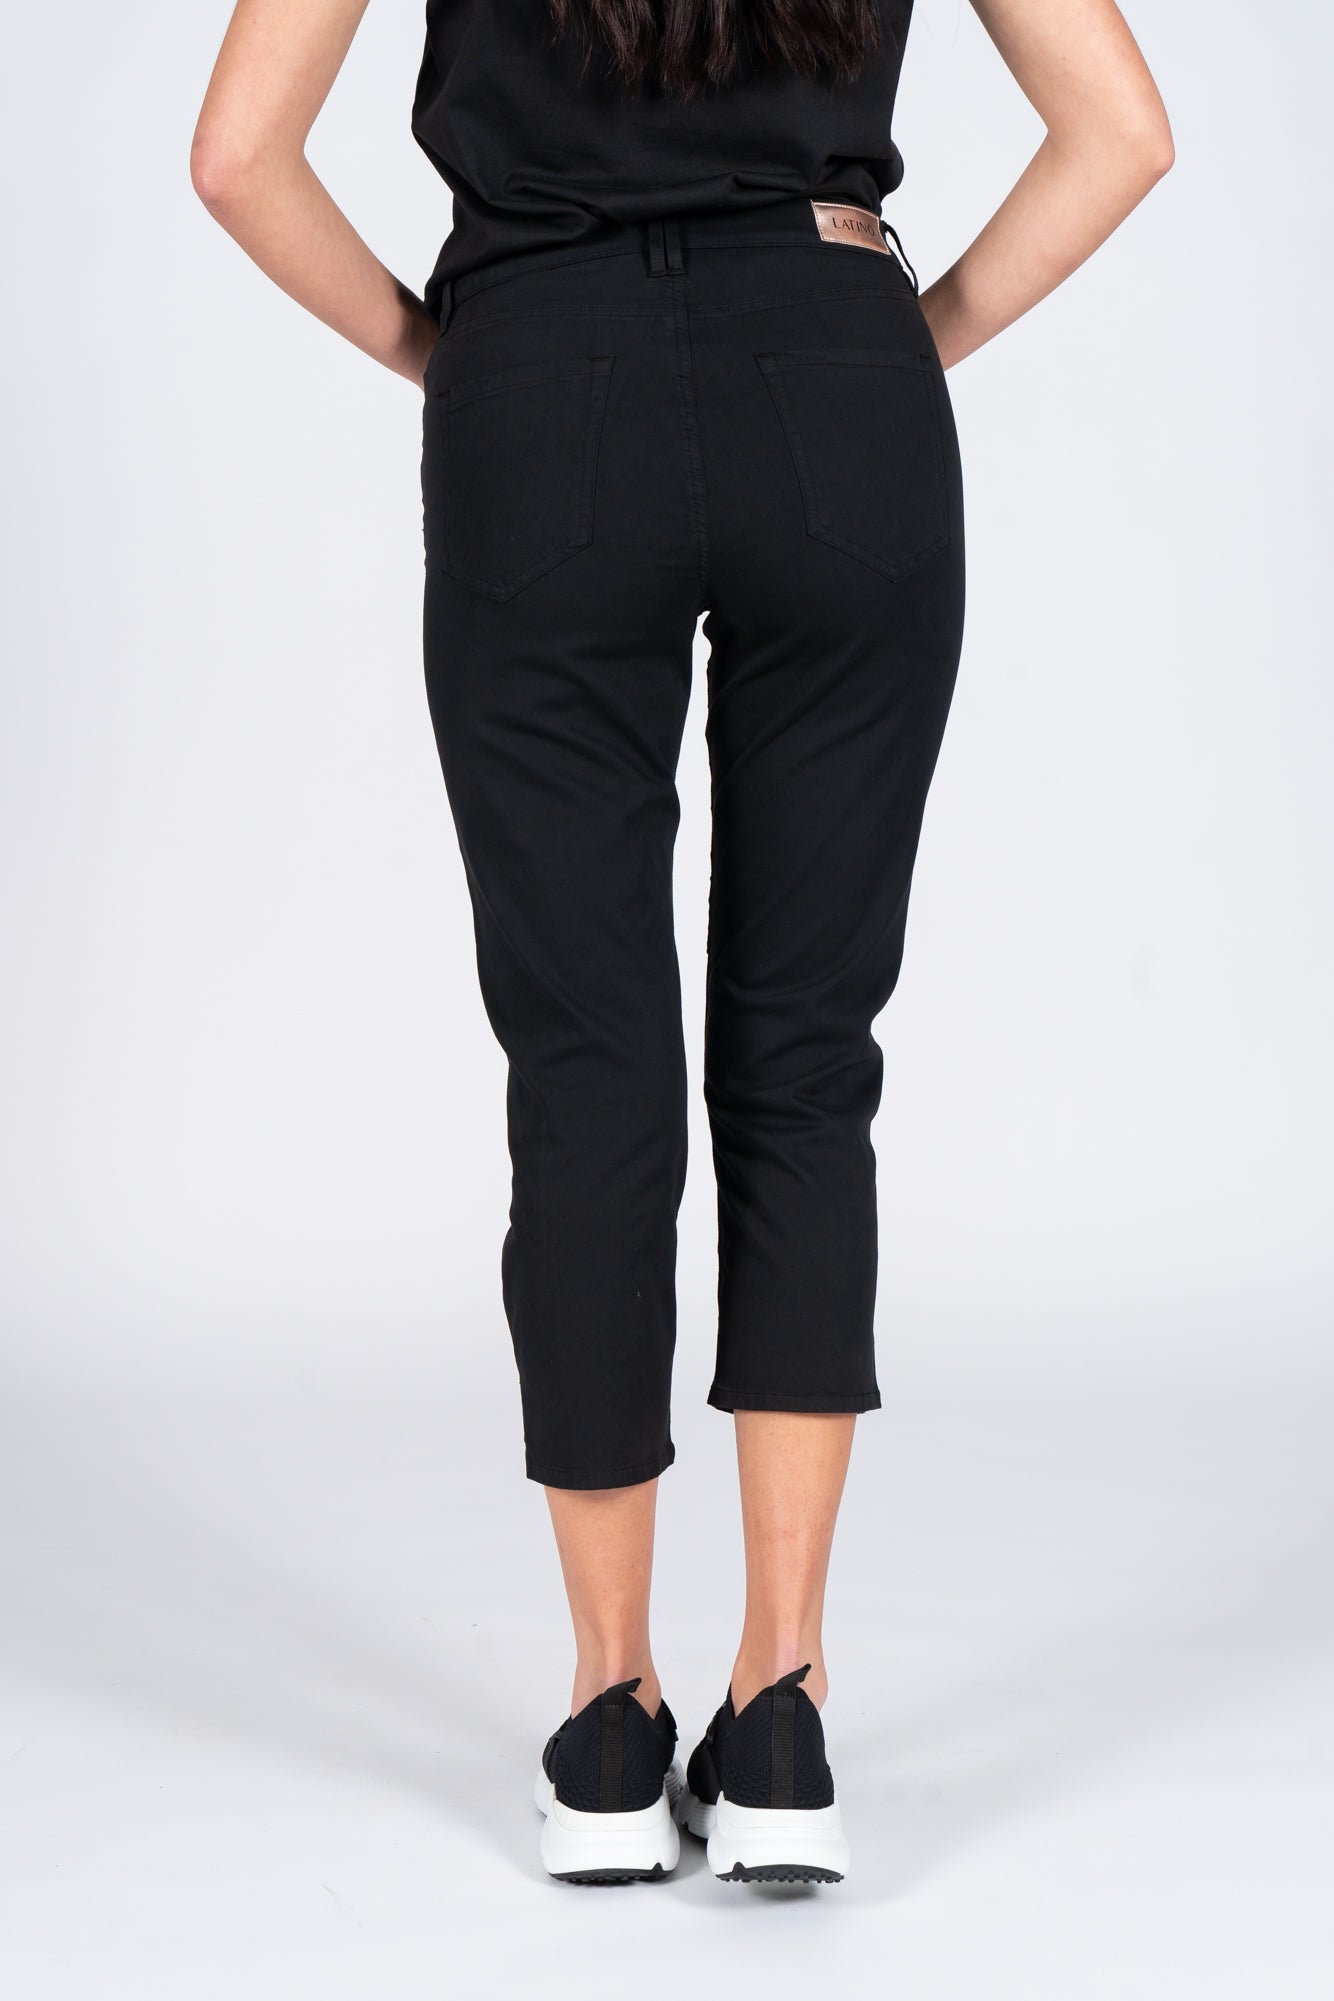 Latino' Jeans Pants Black Woman-5